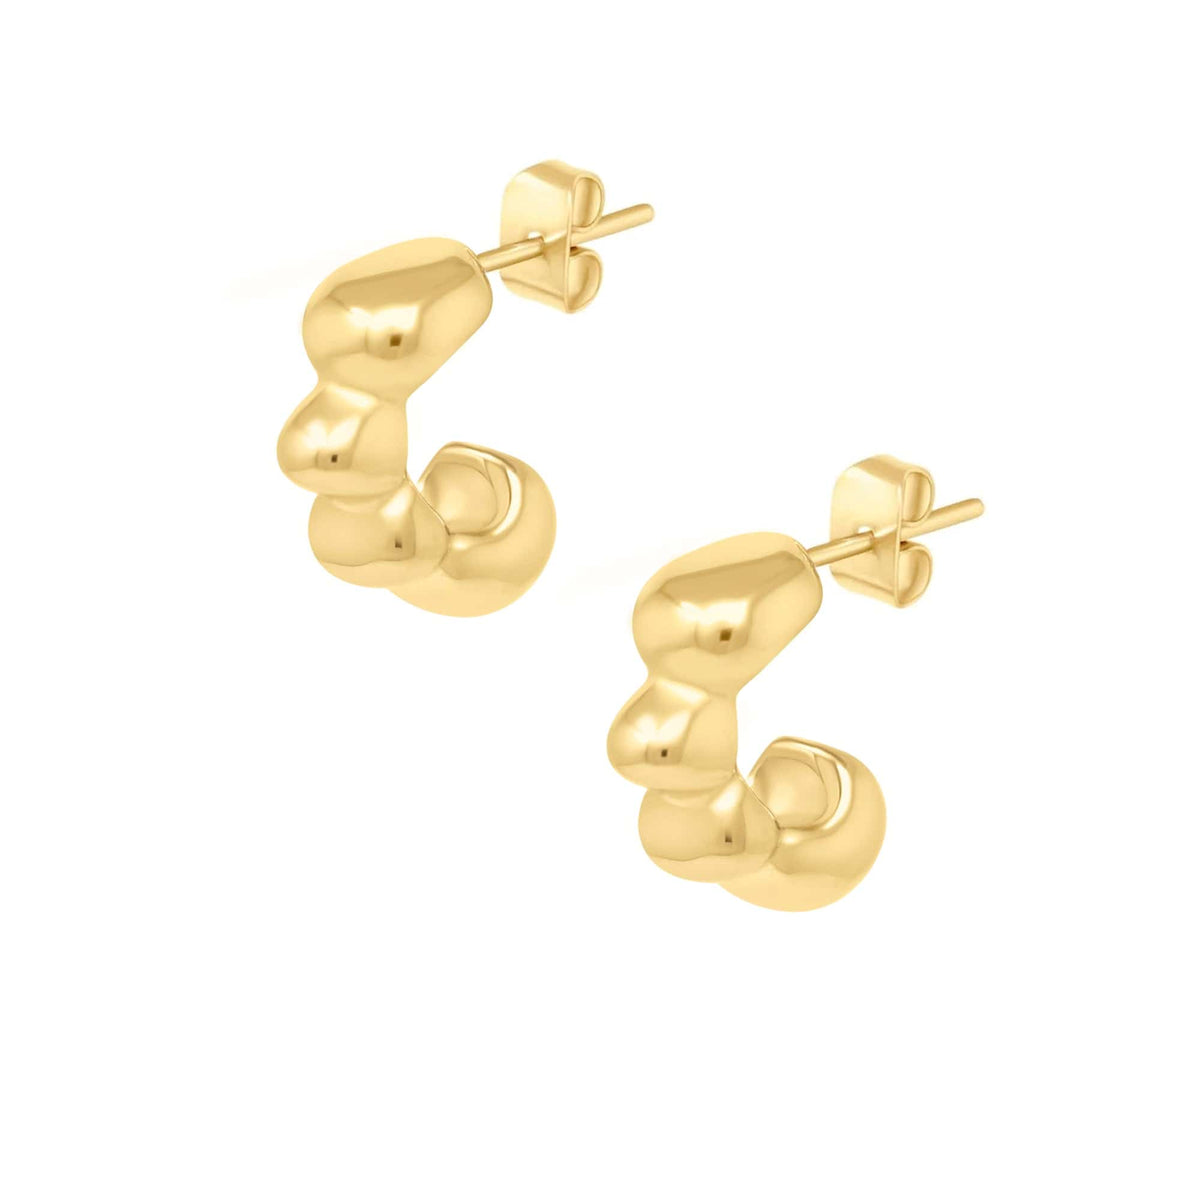 BohoMoon Stainless Steel Flourish Hoop Earrings Gold